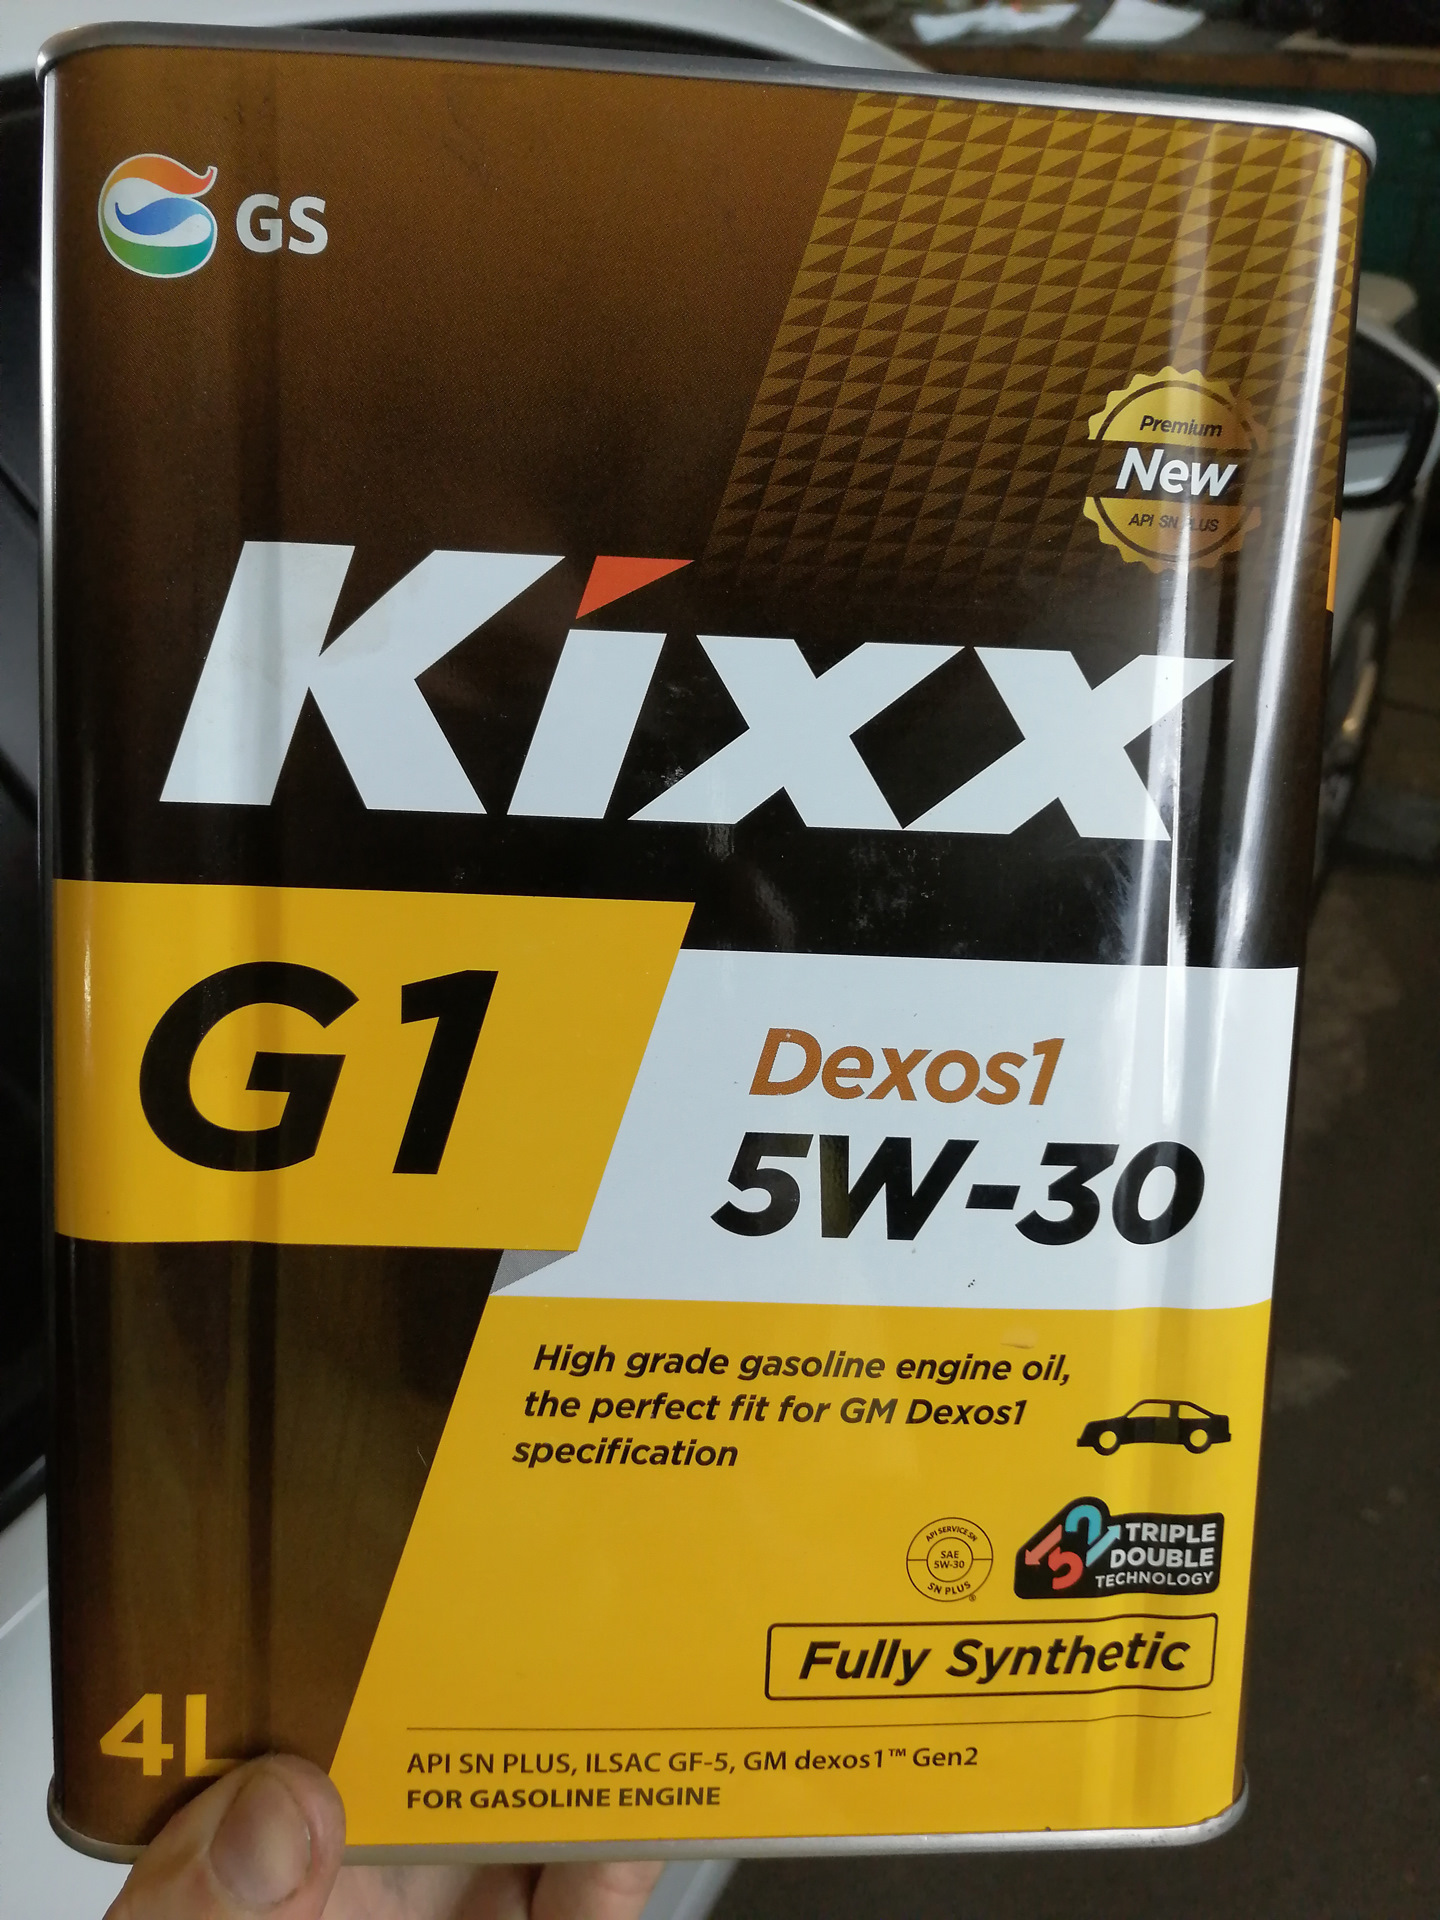 Масло dexos1 5w30. Масло Кикс 5w30 дексос 2. Масло Кикс 5w30 синтетика для дизеля. Kixx g1 5w-30. Kixx 5w30 g1 dexos1 артикул.